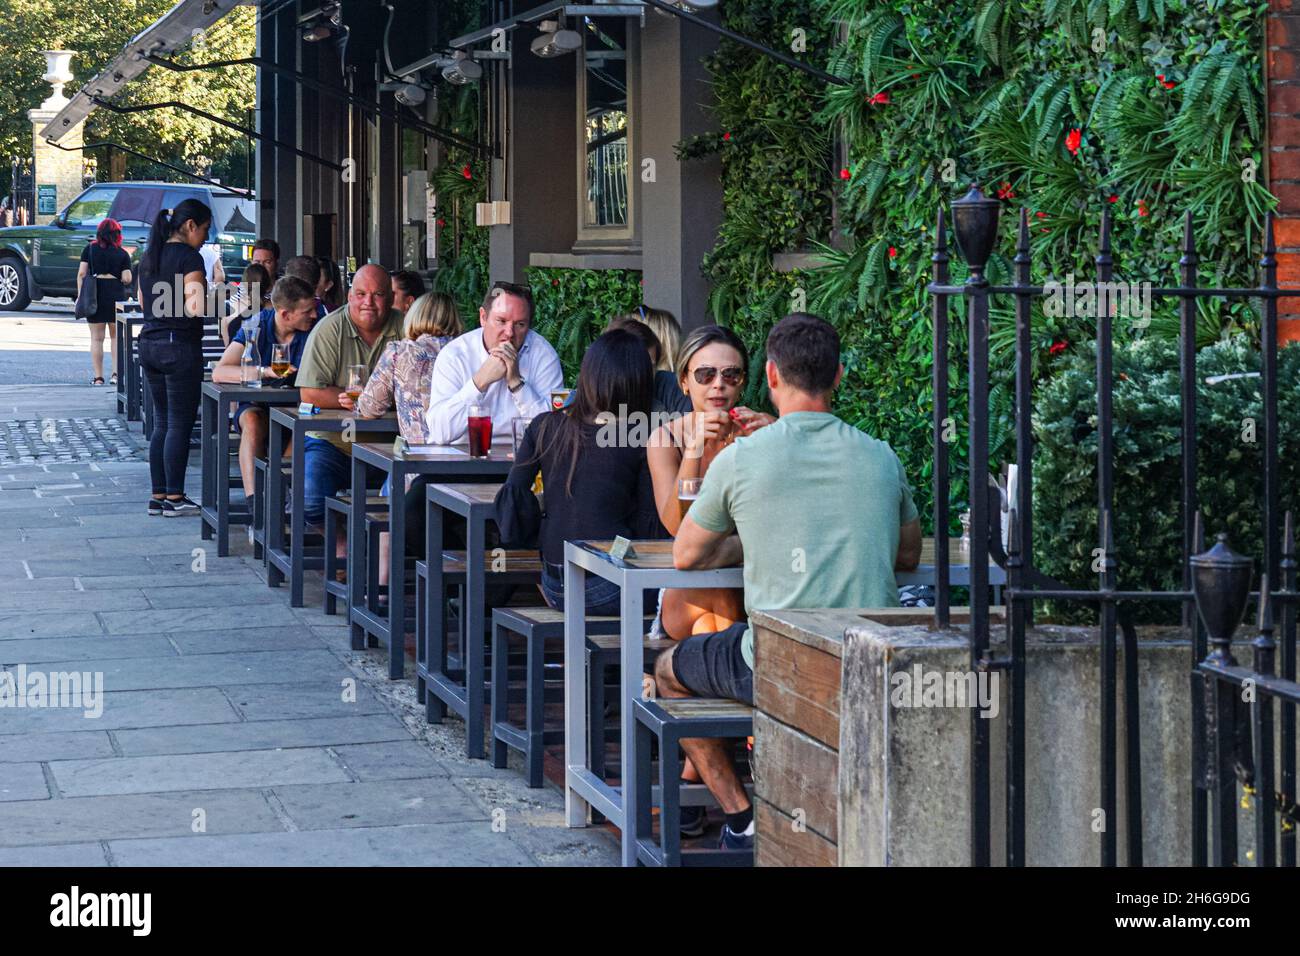 Menschen, die vor dem Greenwich Tavern Pub in Greenwich, London sitzen England Vereinigtes Königreich Großbritannien Stockfoto